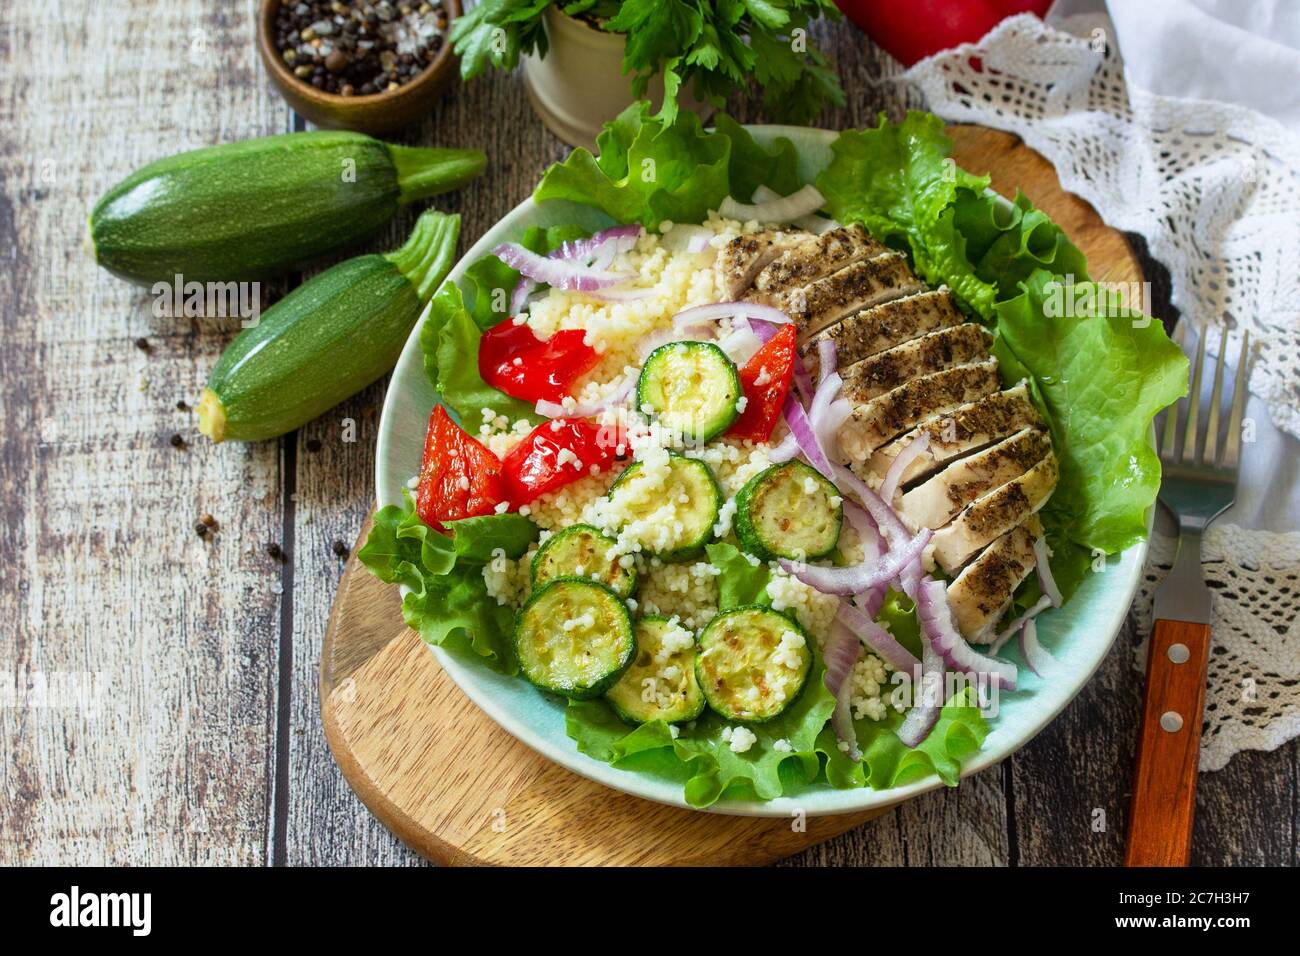 Cuisine orientale. Déjeuner d'été, salade saine avec couscous, légumes grillés et laitue. Copier l'espace. Banque D'Images